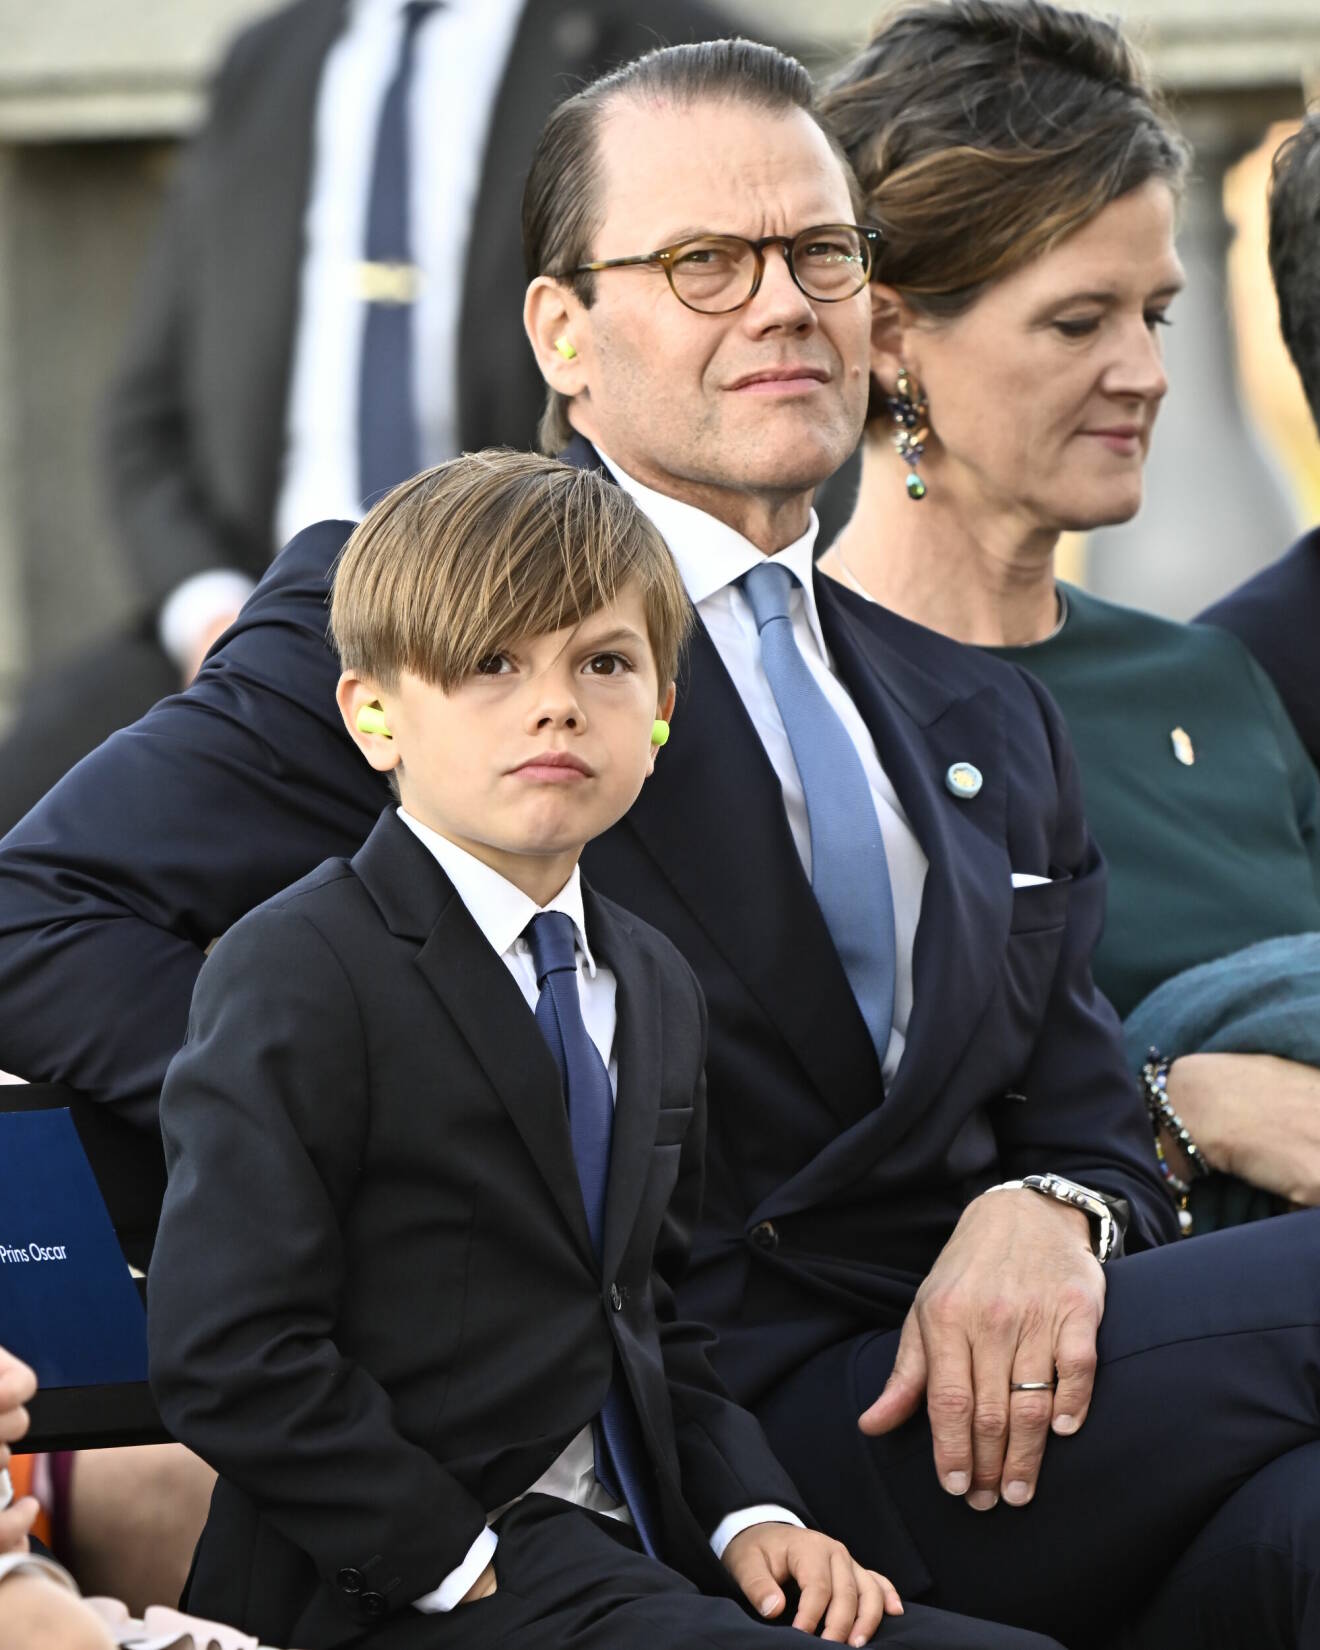 Prins Daniel och prins Oscar i publiken när Stockholm stad arrangerar en jubileumskonsert på Norrbro under lördagen i samband med kung Carl XVI Gustafs 50-årsjubileum på tronen.